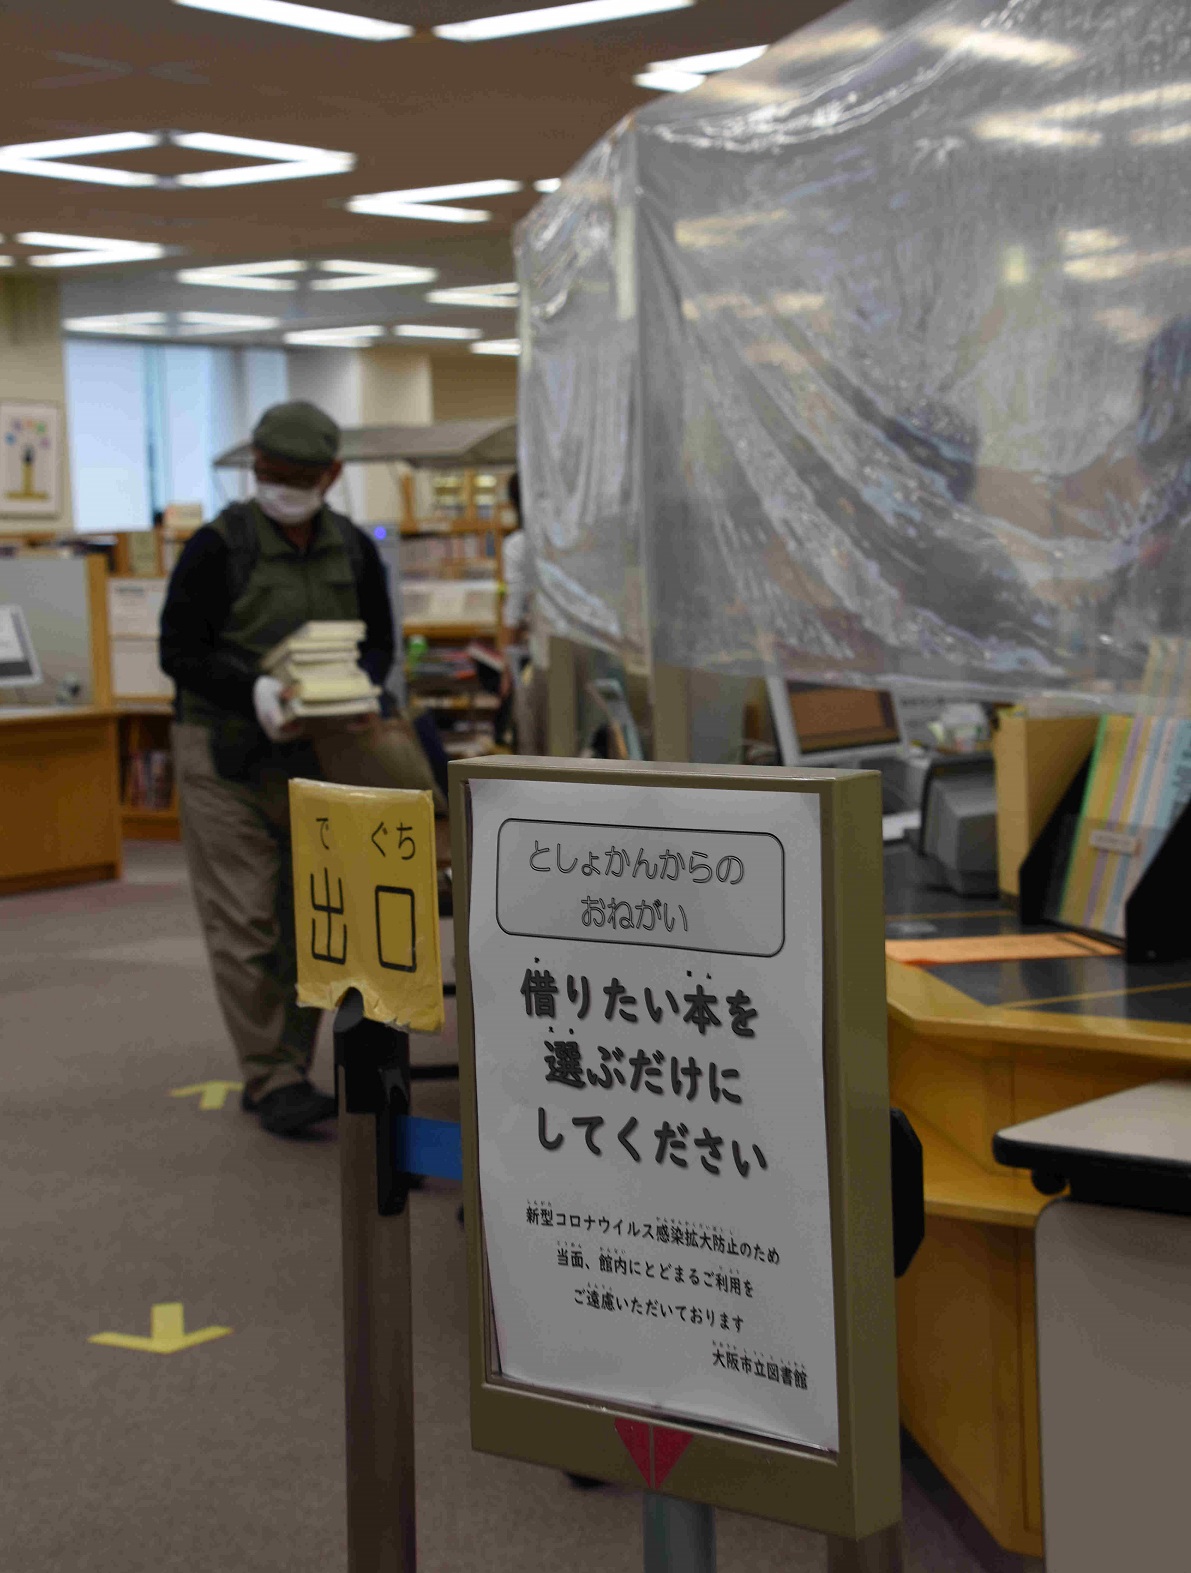 「借りたい本を選ぶだけにしてください」と図書館のサービス制限を呼びかけた=2020年5月16日午前11時41分、大阪市立中央図書館


 